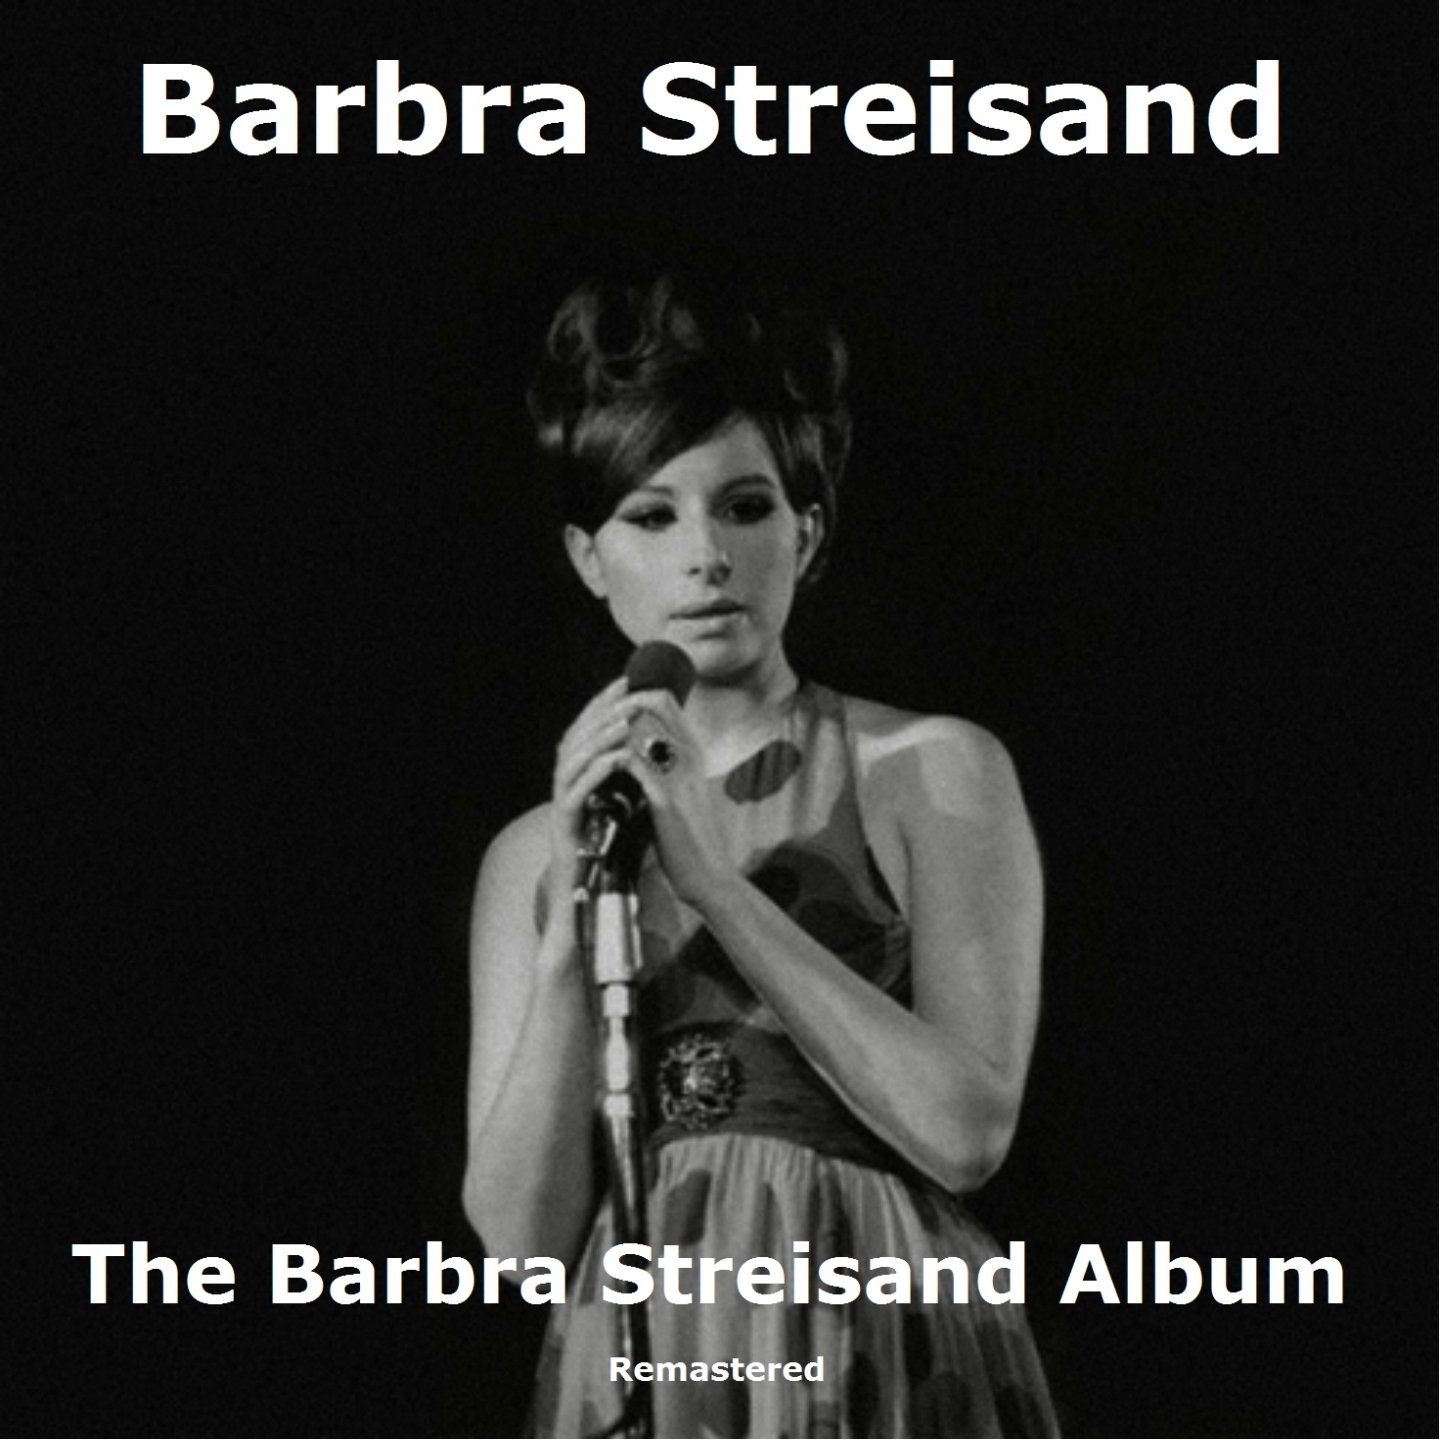 The Barbra Streisand Album Remastered Barbra Streisand — Listen And